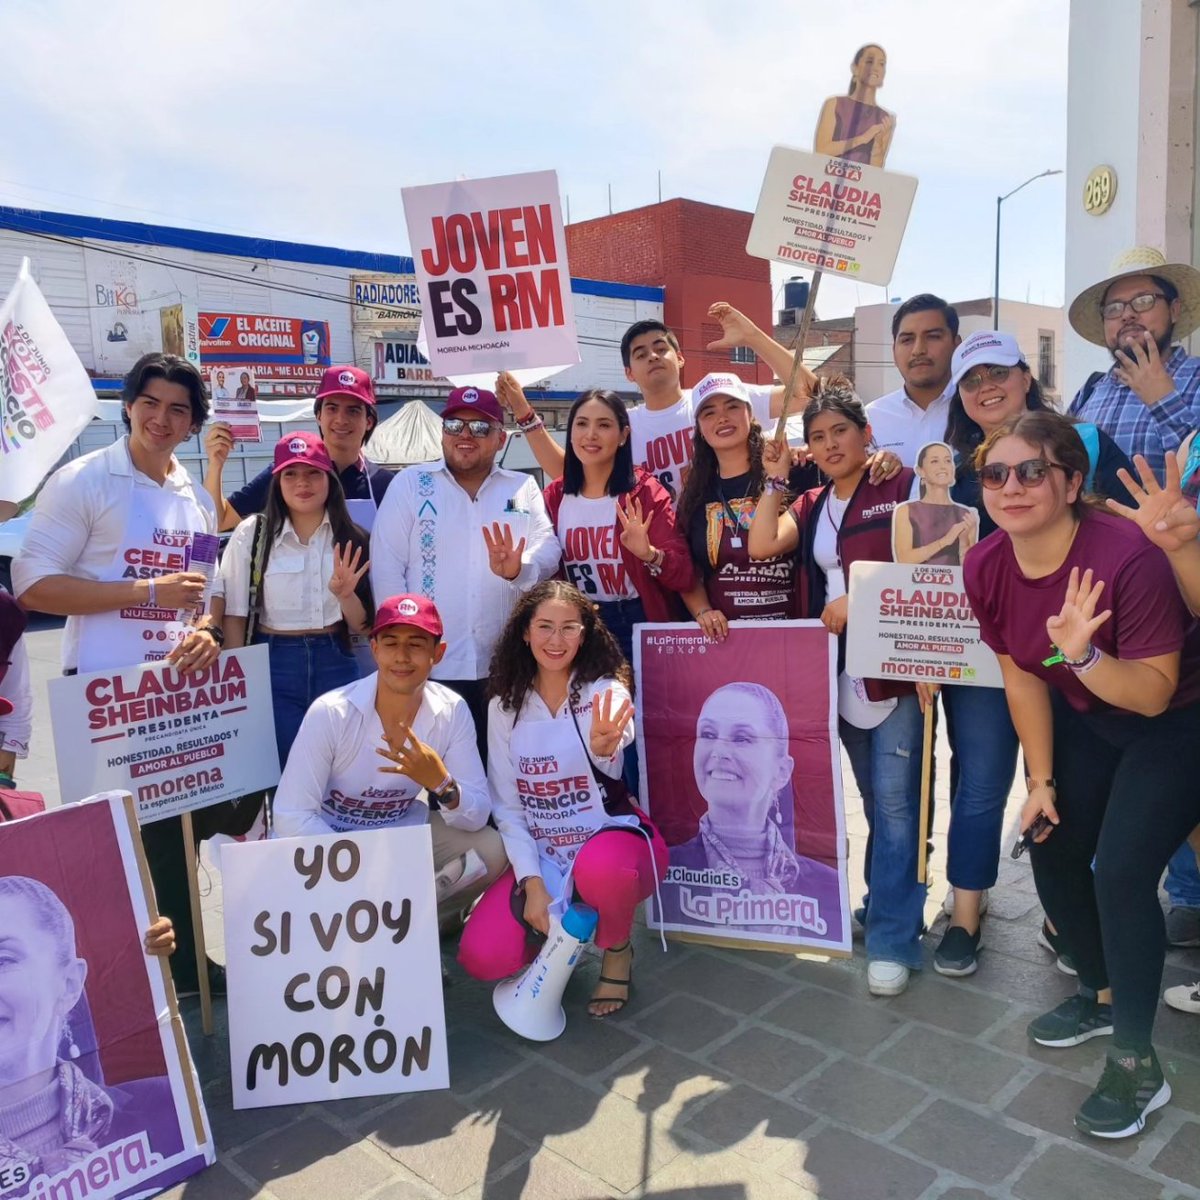 Los jóvenes en Michoacán respaldamos a Claudia Sheinbaum,  quien será #LaPrimera presidenta de México🇲🇽🫶🏻 ¡Definitivamente somos un movimiento fuerte, unido e imparable!